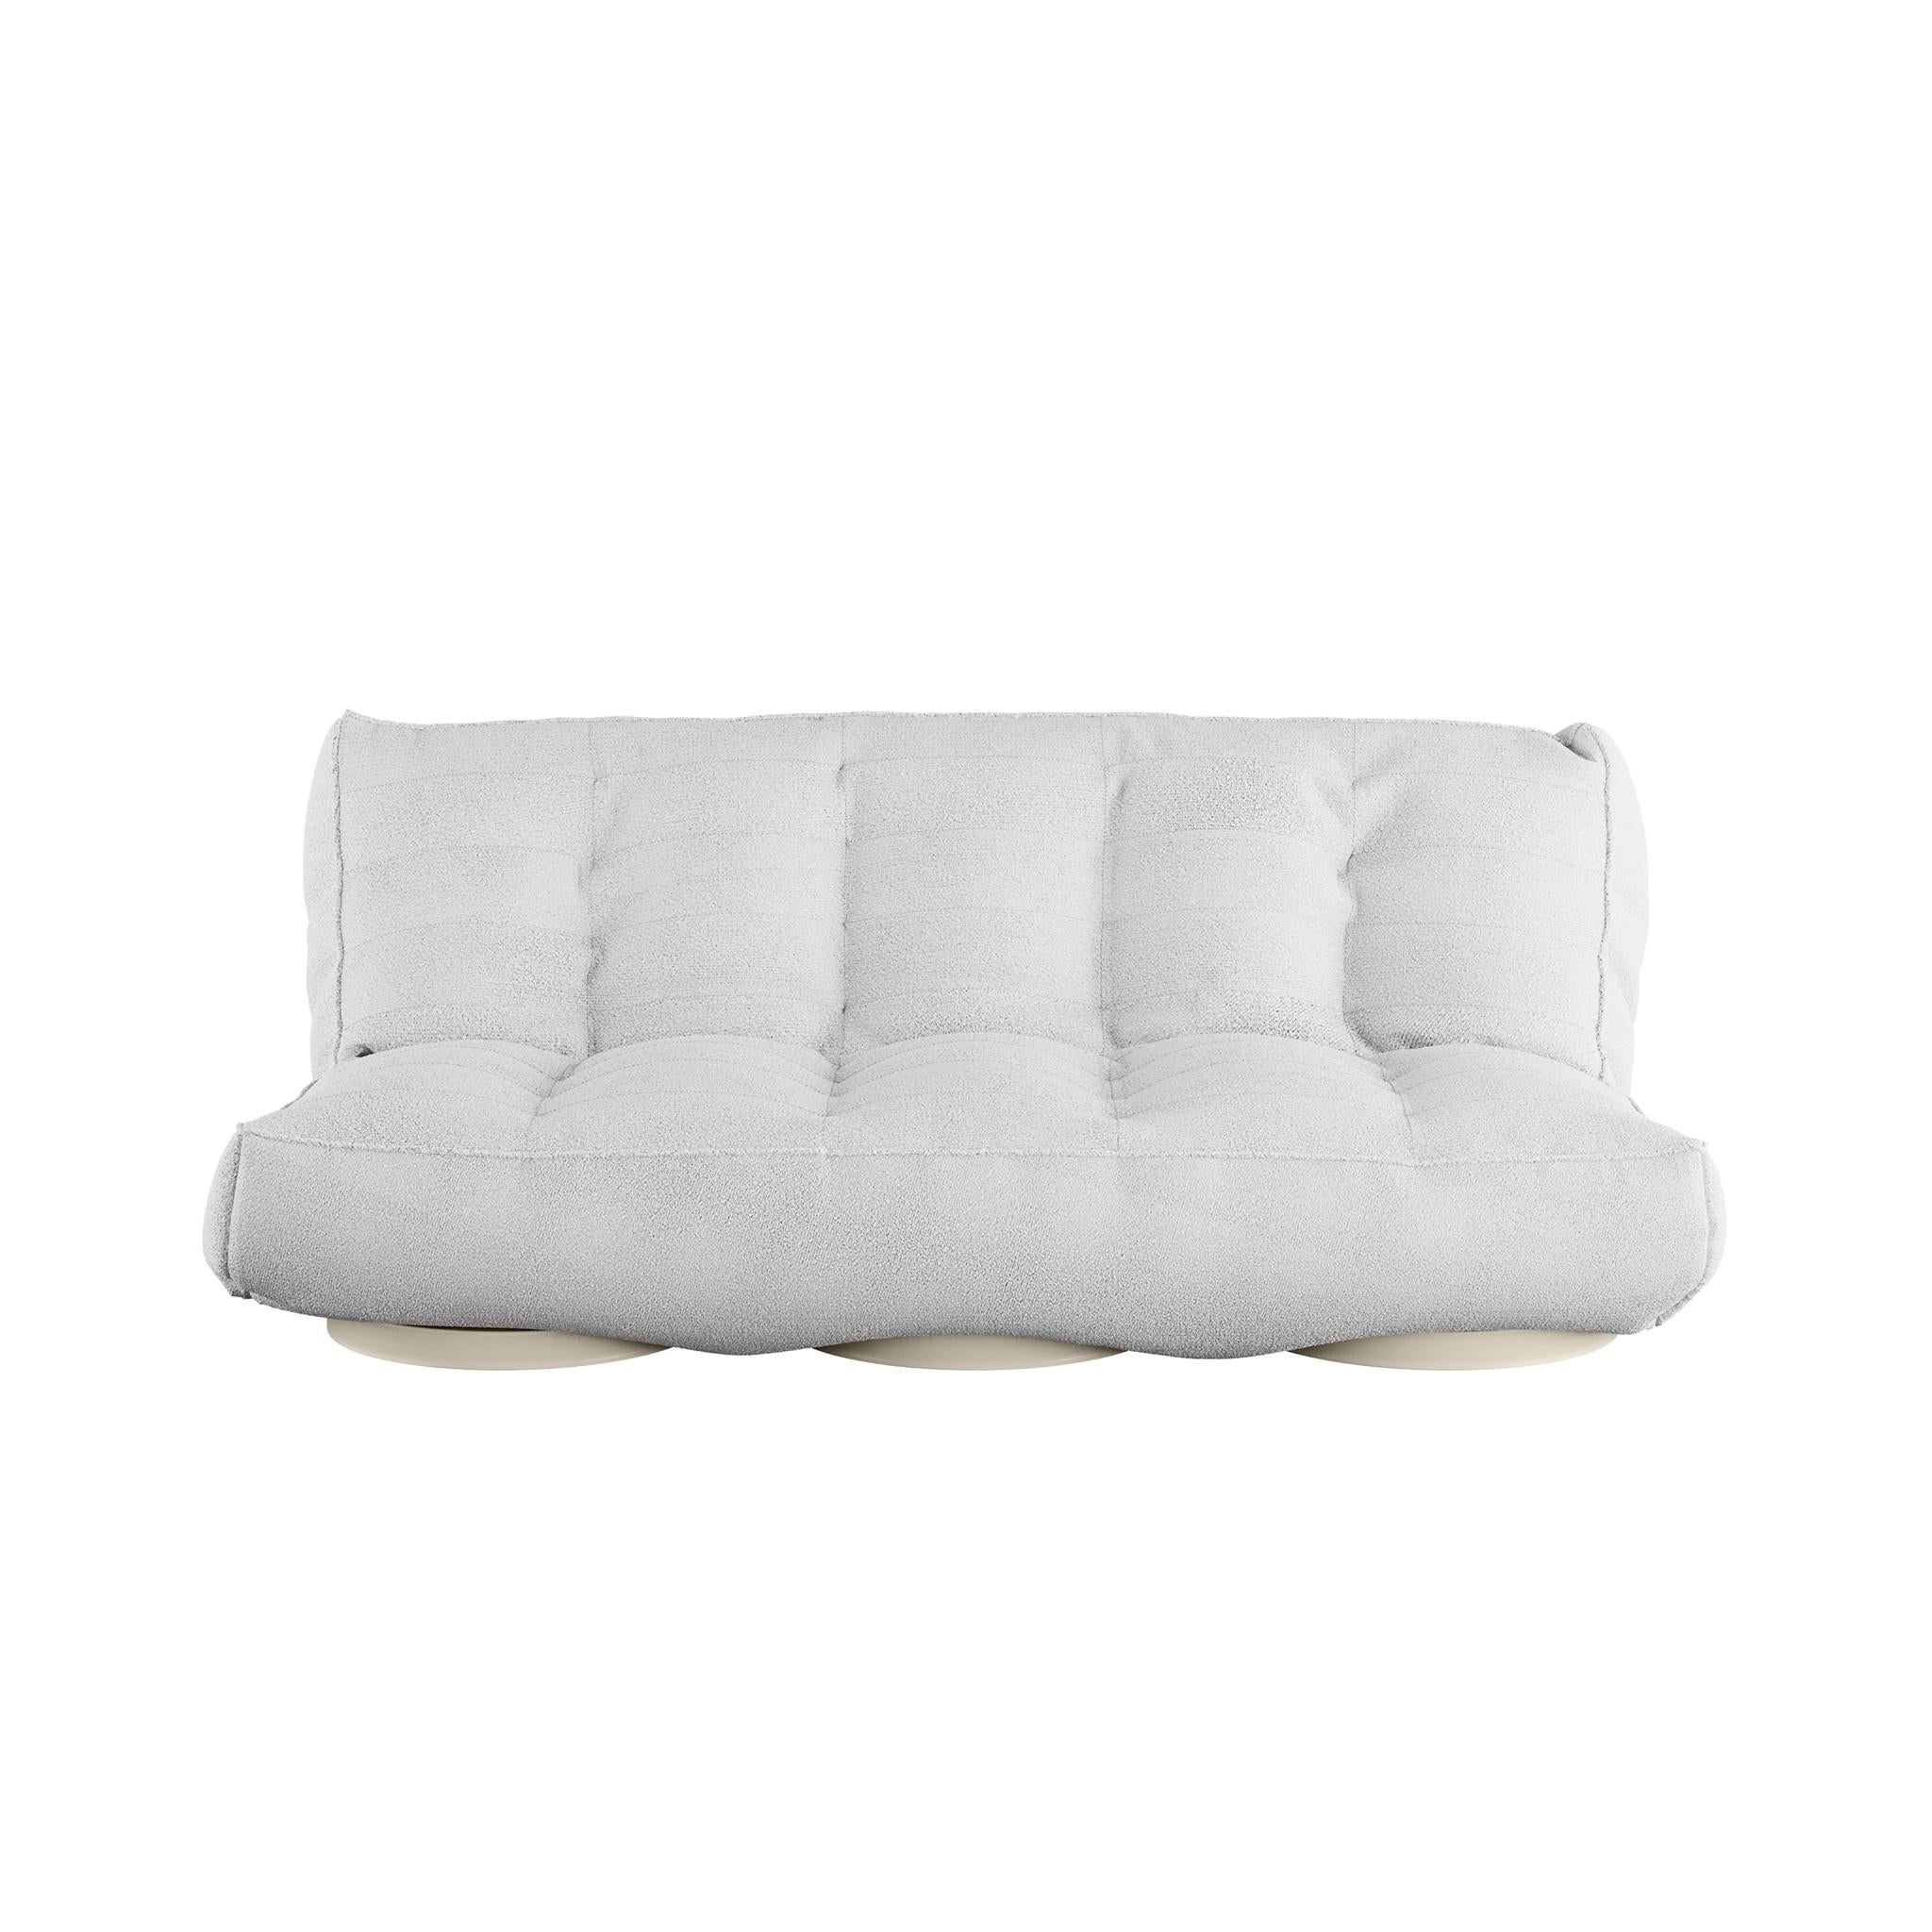 El sofá-cama Foil es un sofá-cama de lujo. ¿Buscas un sofá moderno cuyo diseño no perezca con el paso del tiempo? Lo has encontrado. La estructura ergonómica de Foil y sus delicados detalles la hacen cómoda, lujosa y atemporal. ¿Hay algo más que